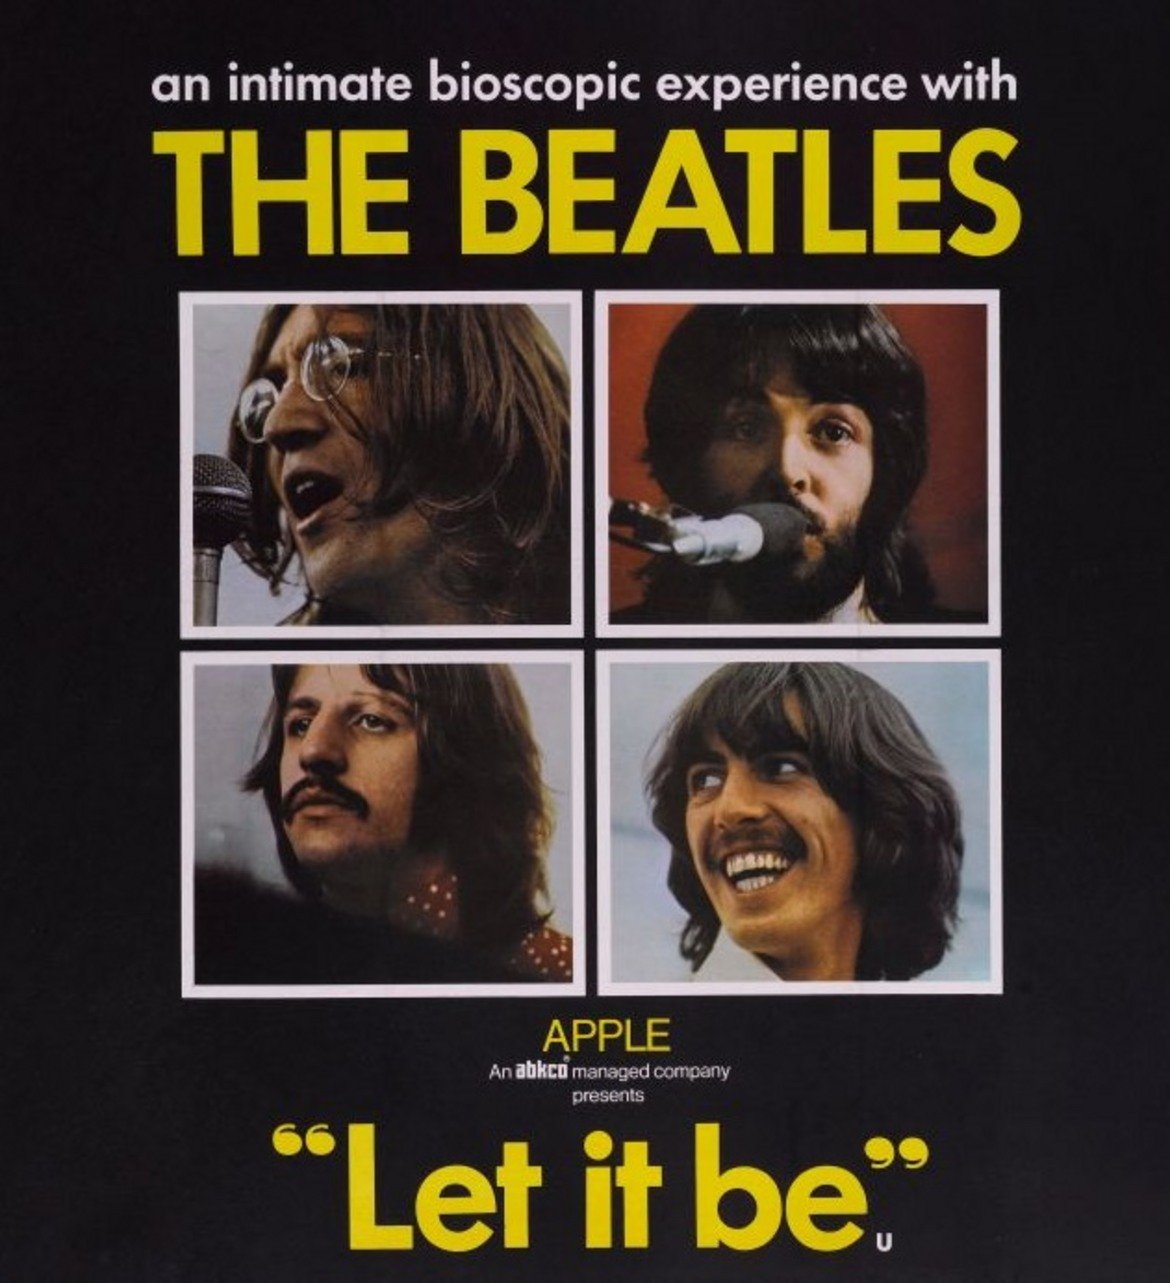  The Beatles - Let it be 

Да, The Beatles не са били застраховани от това да не харесат собствения си албум. "Let it be" е дванадесетият им и последен албум, за който се събират с продуцента Фил Спектър. Но по онова време това, което по-късно ще се превърне в епитафия на групата, не е посрещнато с особено въодушевление, особено за избора на Спектър като продуцент.

Албумът нанася на бандата щети, които трудно могат да бъдат поправени. В интервю за Rolling Stone Джон Ленън описва преживяването около създаването на "Let it be" като отвратително и допълва, че този албум е една от основните причини The Beatles да се разпаднат.